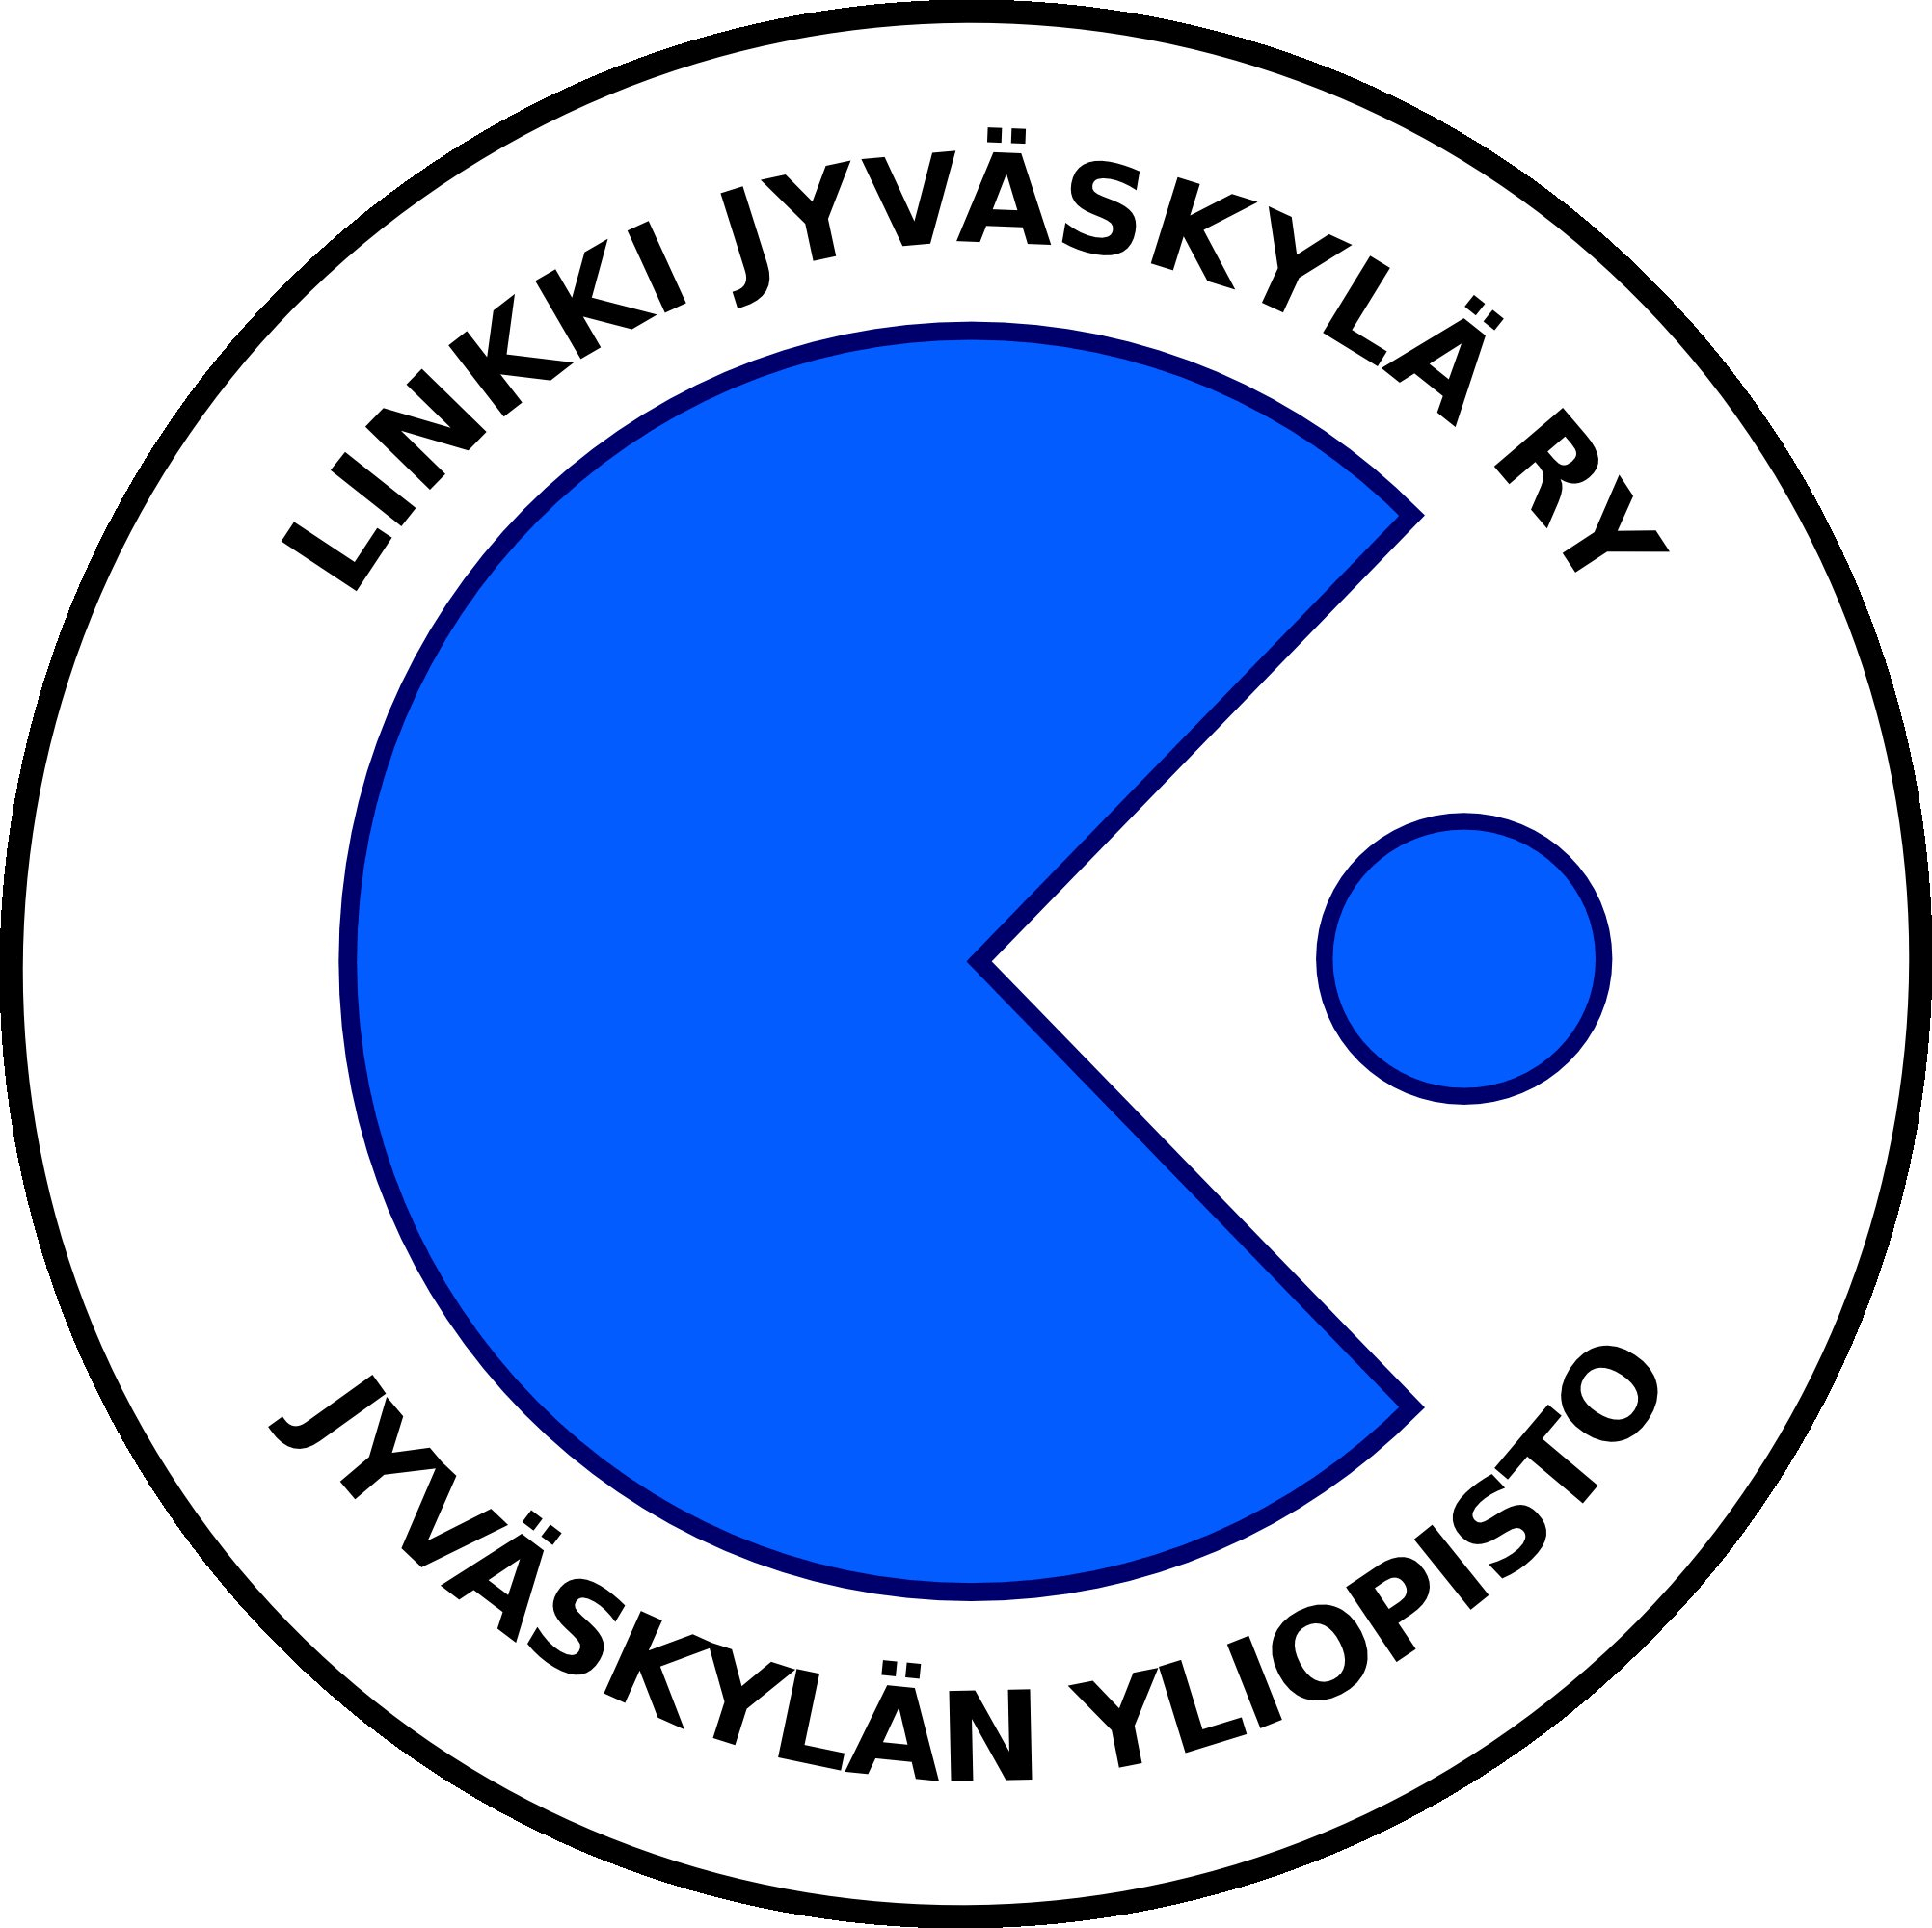 linkki jyväskylä logo